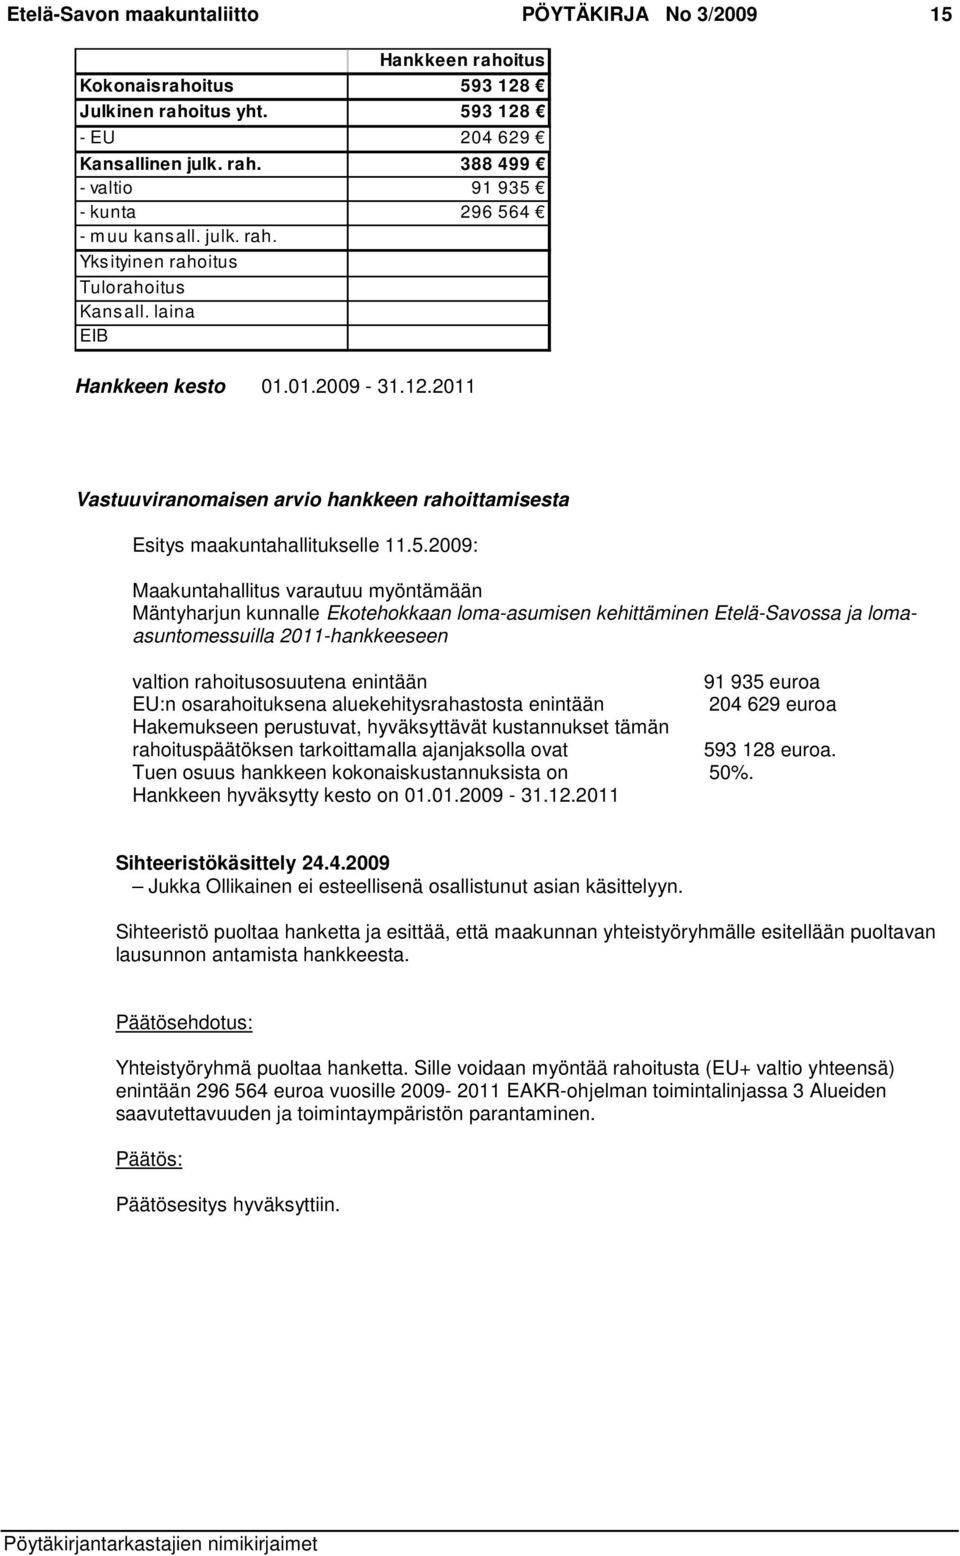 2009: Maakuntahallitus varautuu myöntämään Mäntyharjun kunnalle Ekotehokkaan loma-asumisen kehittäminen Etelä-Savossa ja lomaasuntomessuilla 2011-hankkeeseen valtion rahoitusosuutena enintään 91 935